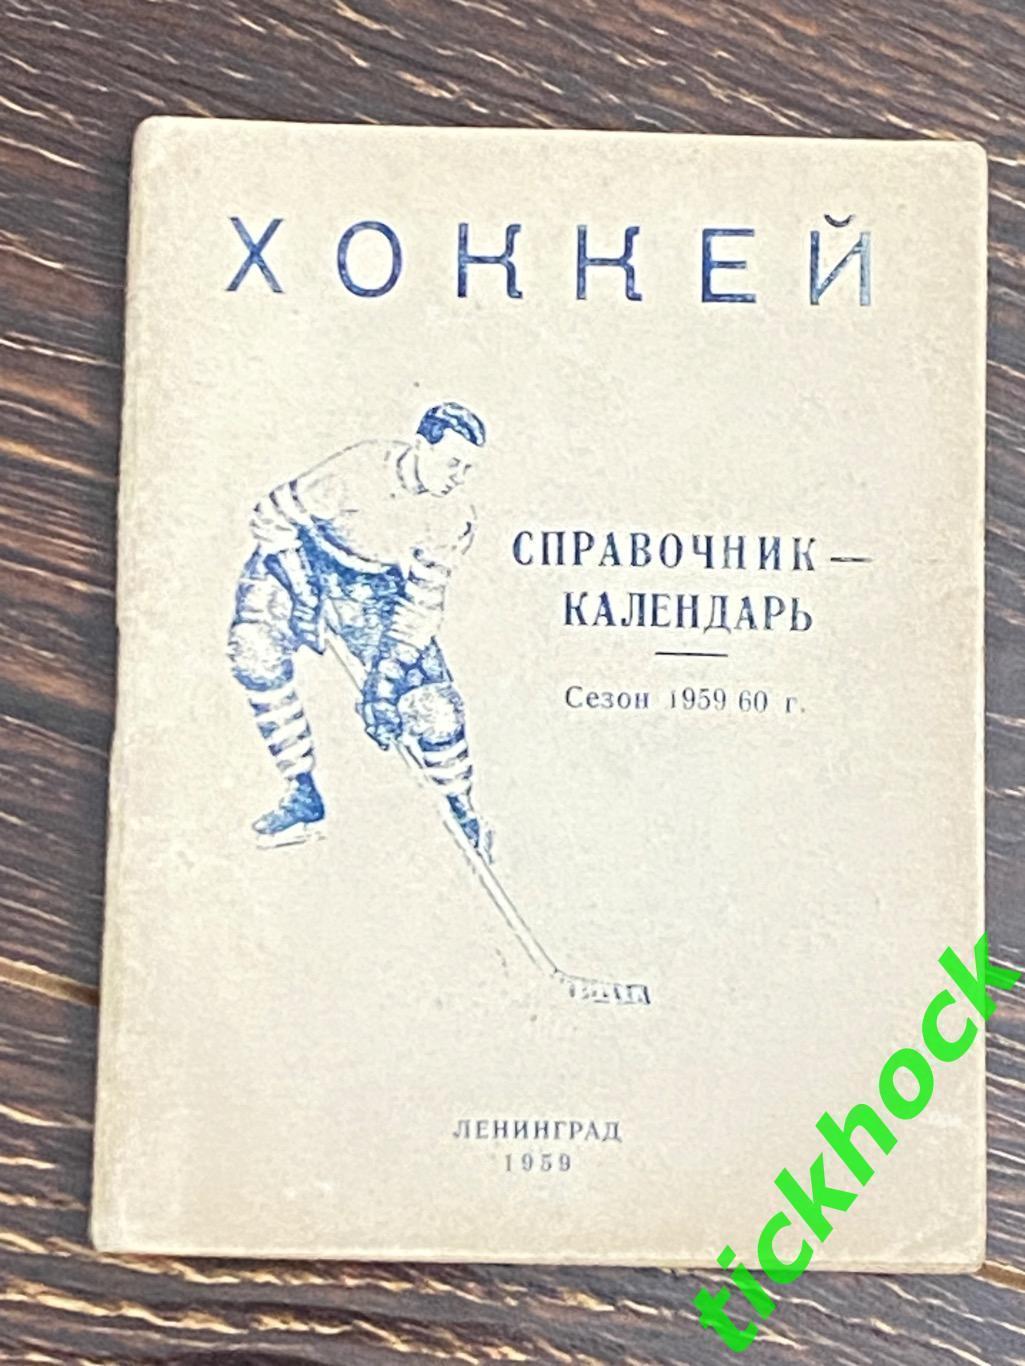 1959 - 1960 год Хоккей. Справочник-календарь. Ленинград.